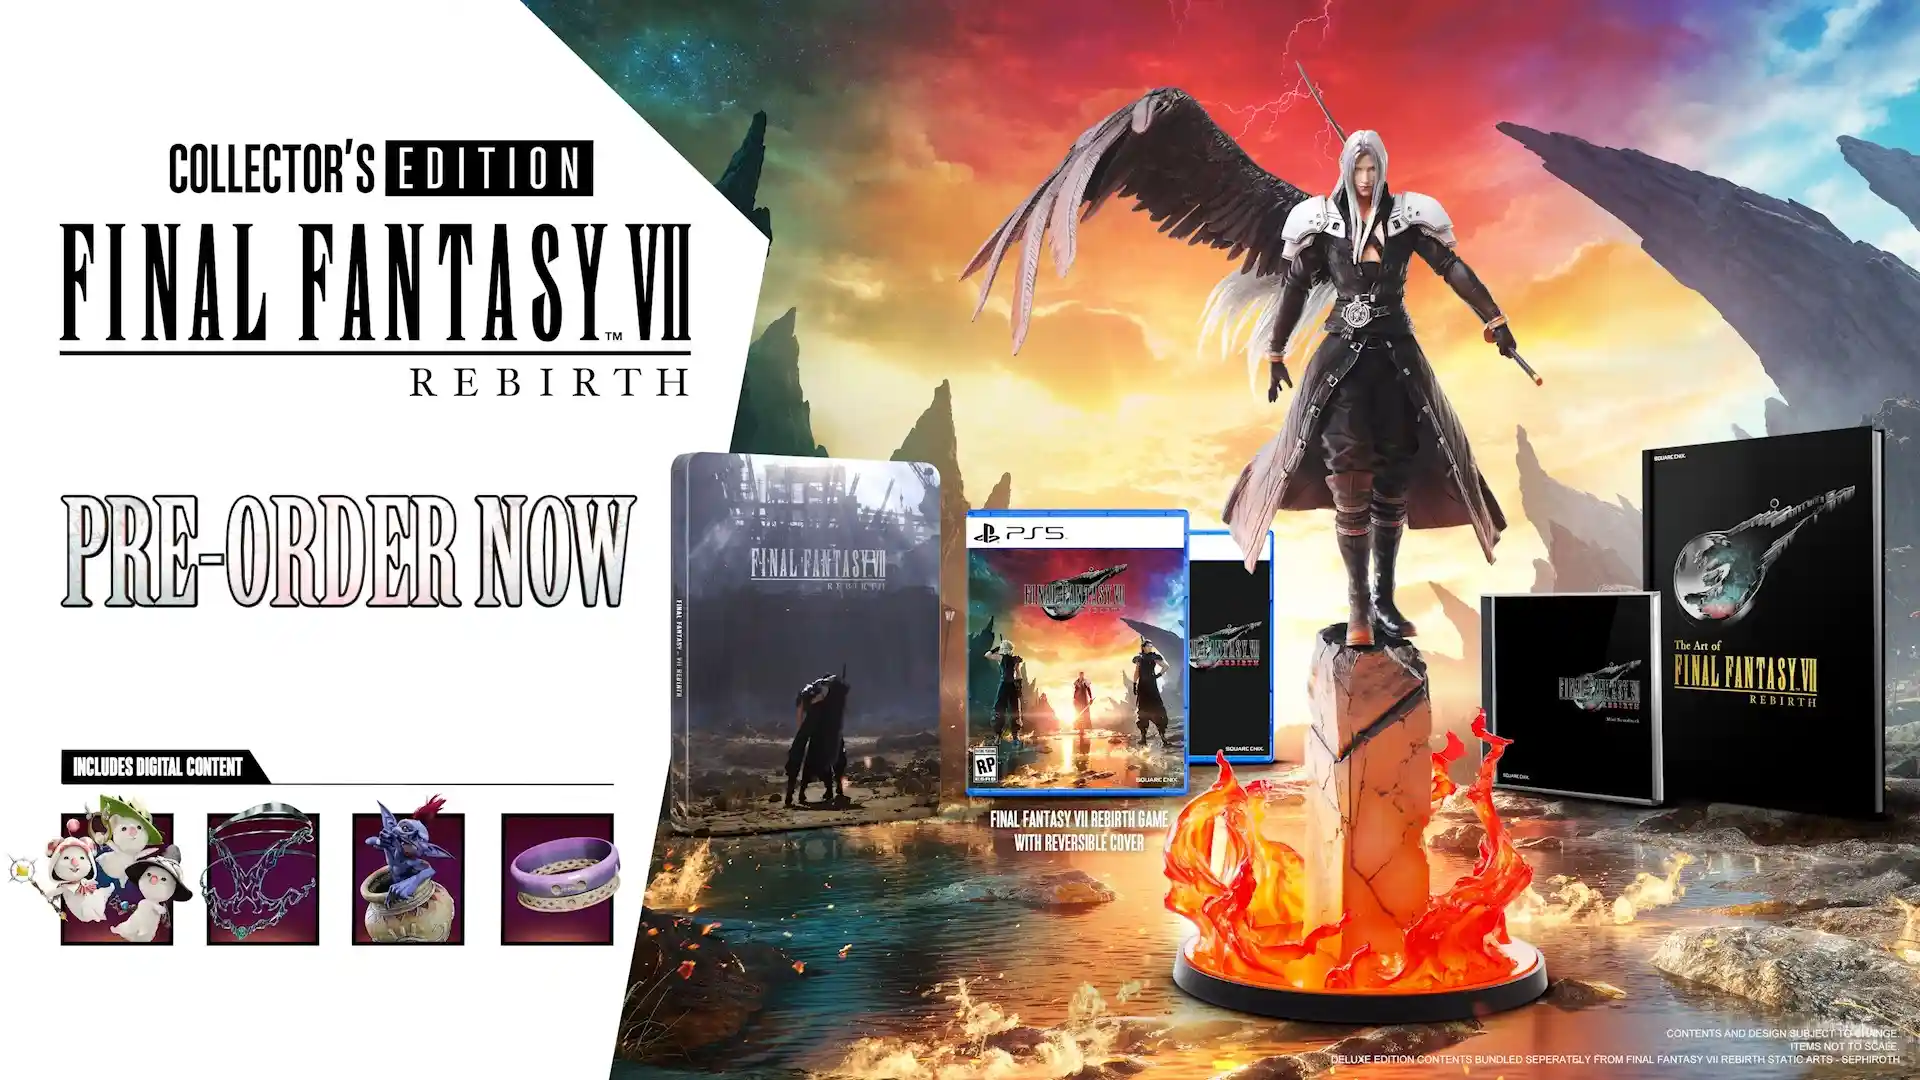 Final Fantasy VII Rebirth Collector's Edition costa 350 dollari, ma c'è anche la Deluxe - tutte le edizioni e i bonus